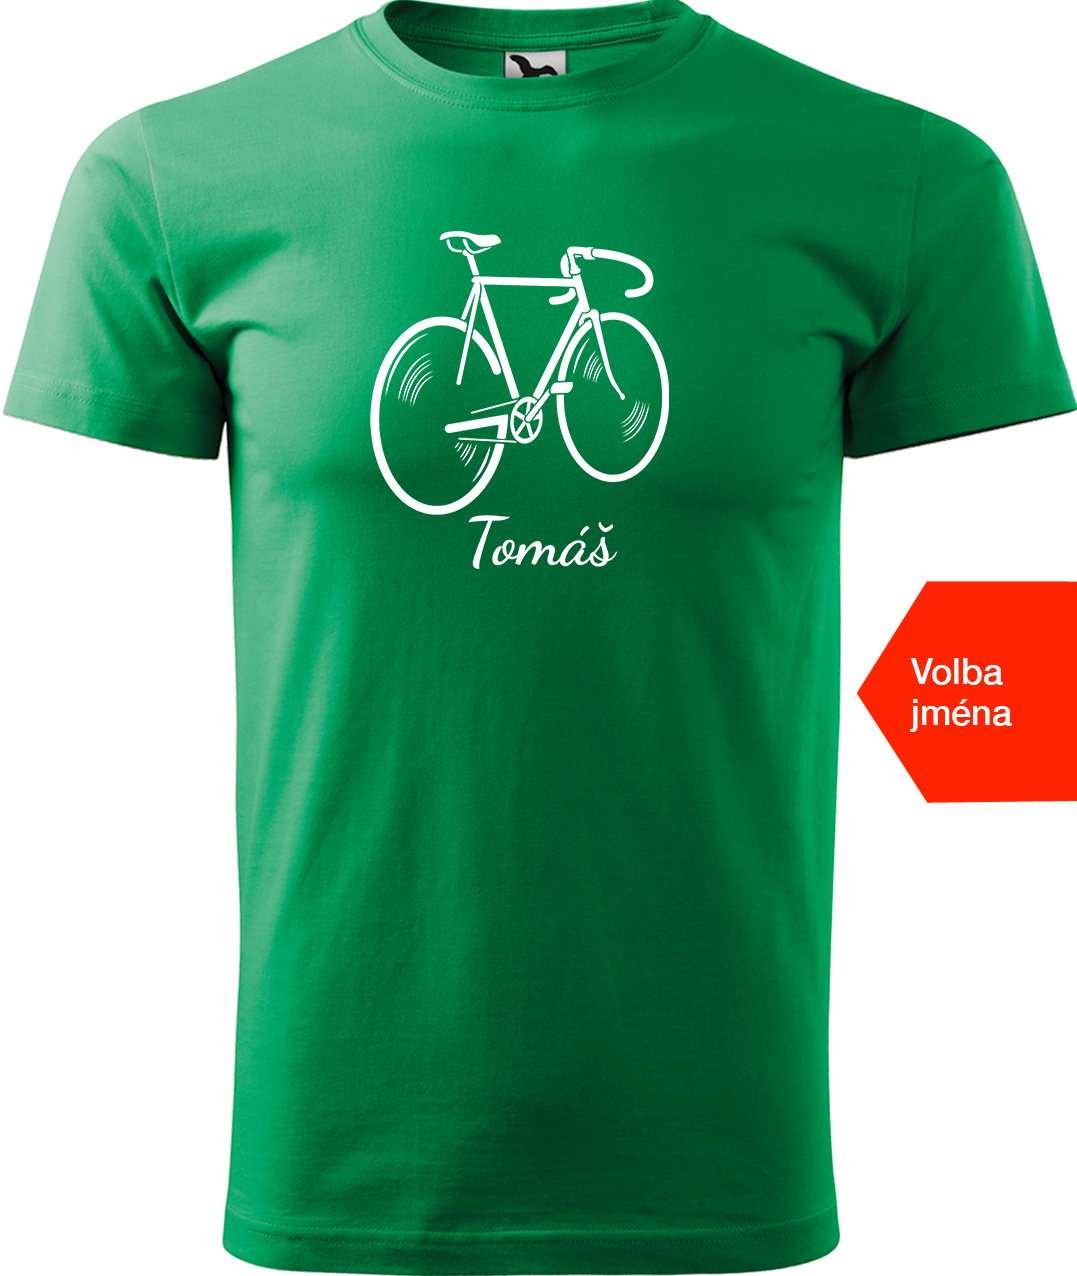 Pánské tričko s kolem a jménem - Pánské kolo Velikost: L, Barva: Středně zelená (16)